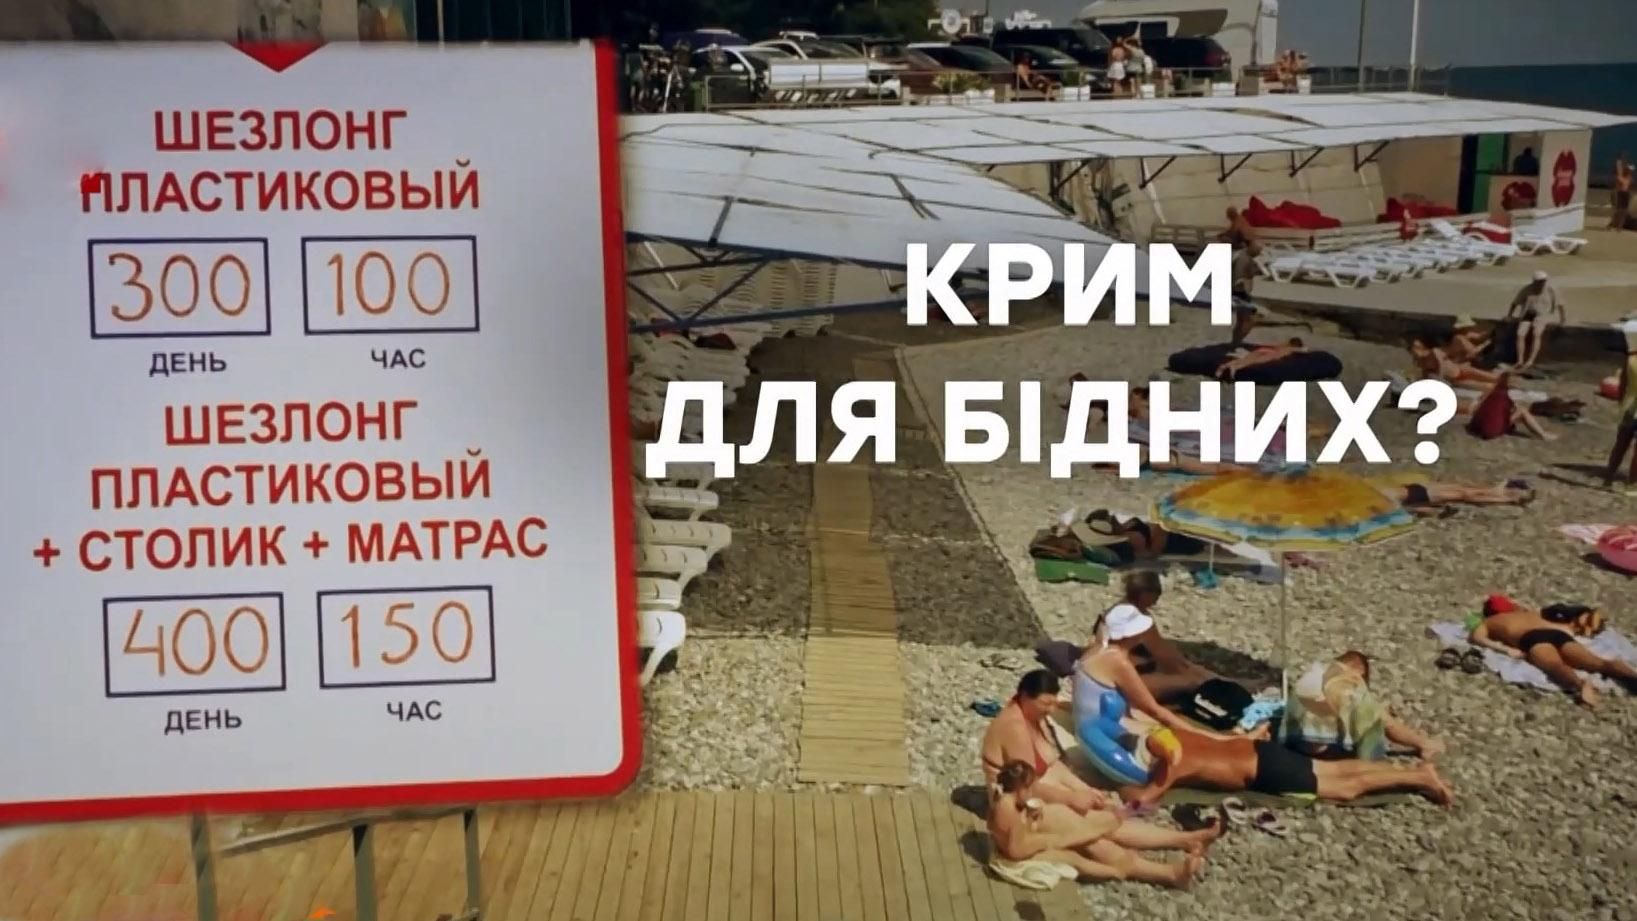 Дороже, чем Египет: чем "поражает" курортный сезон в Крыму